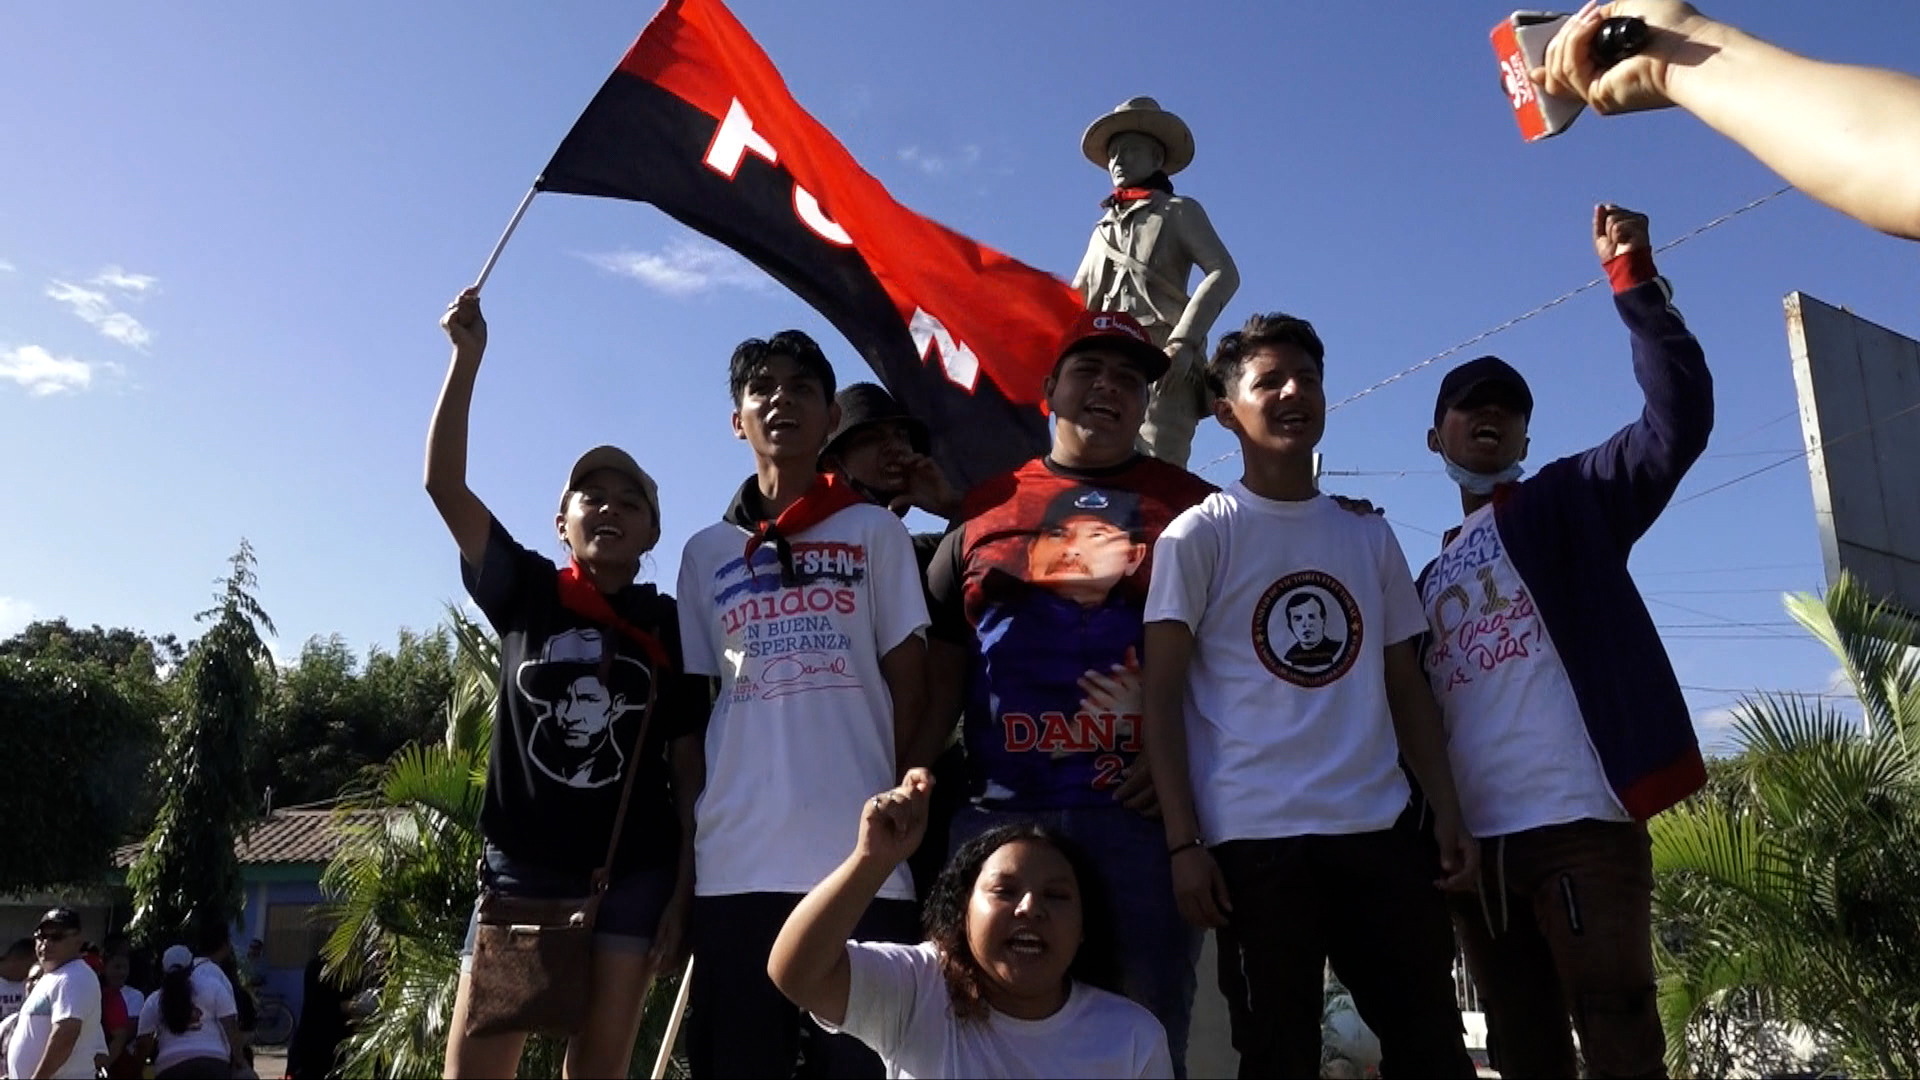 Ciudad Sandino honra al General de Hombres y Mujeres Libres con mística revolucionaria